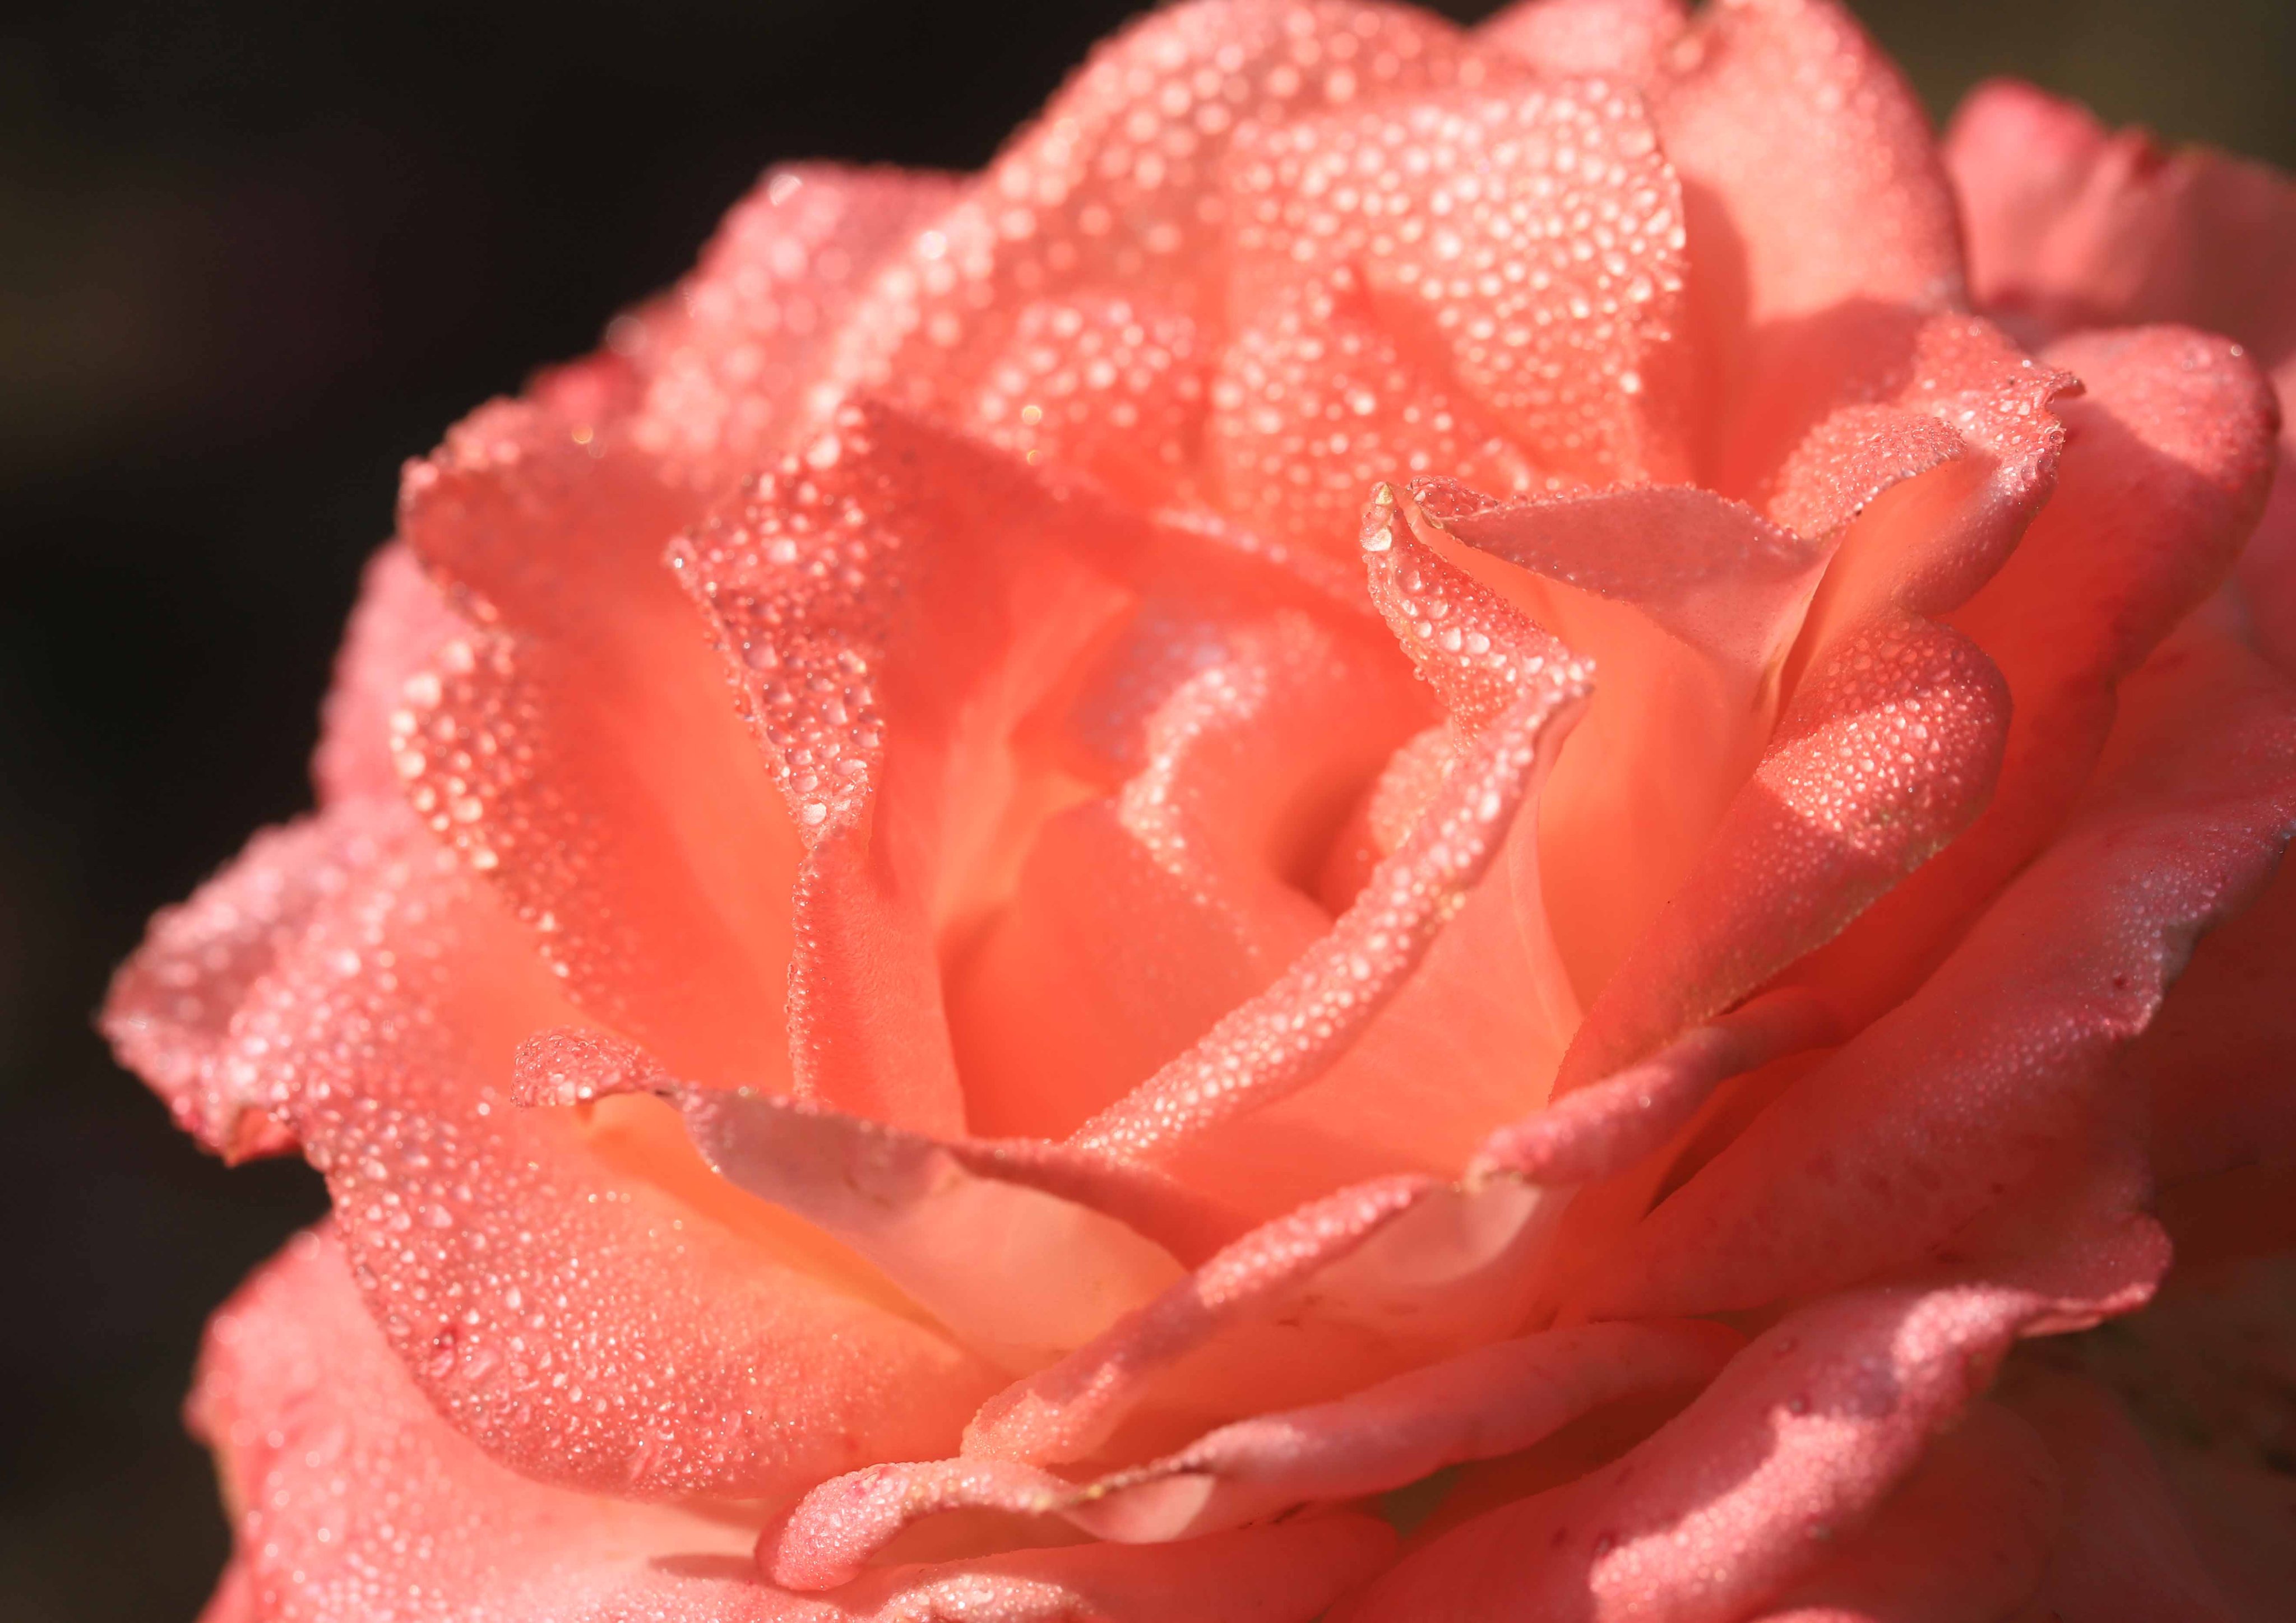 片柳弘史 Sur Twitter 教会の花壇に咲いた 上品なサーモンピンクの薔薇の花 宮沢賢治にちなんで名づけられた イーハトーブの風 という品種です T Co Vmnjw7goj3 Twitter